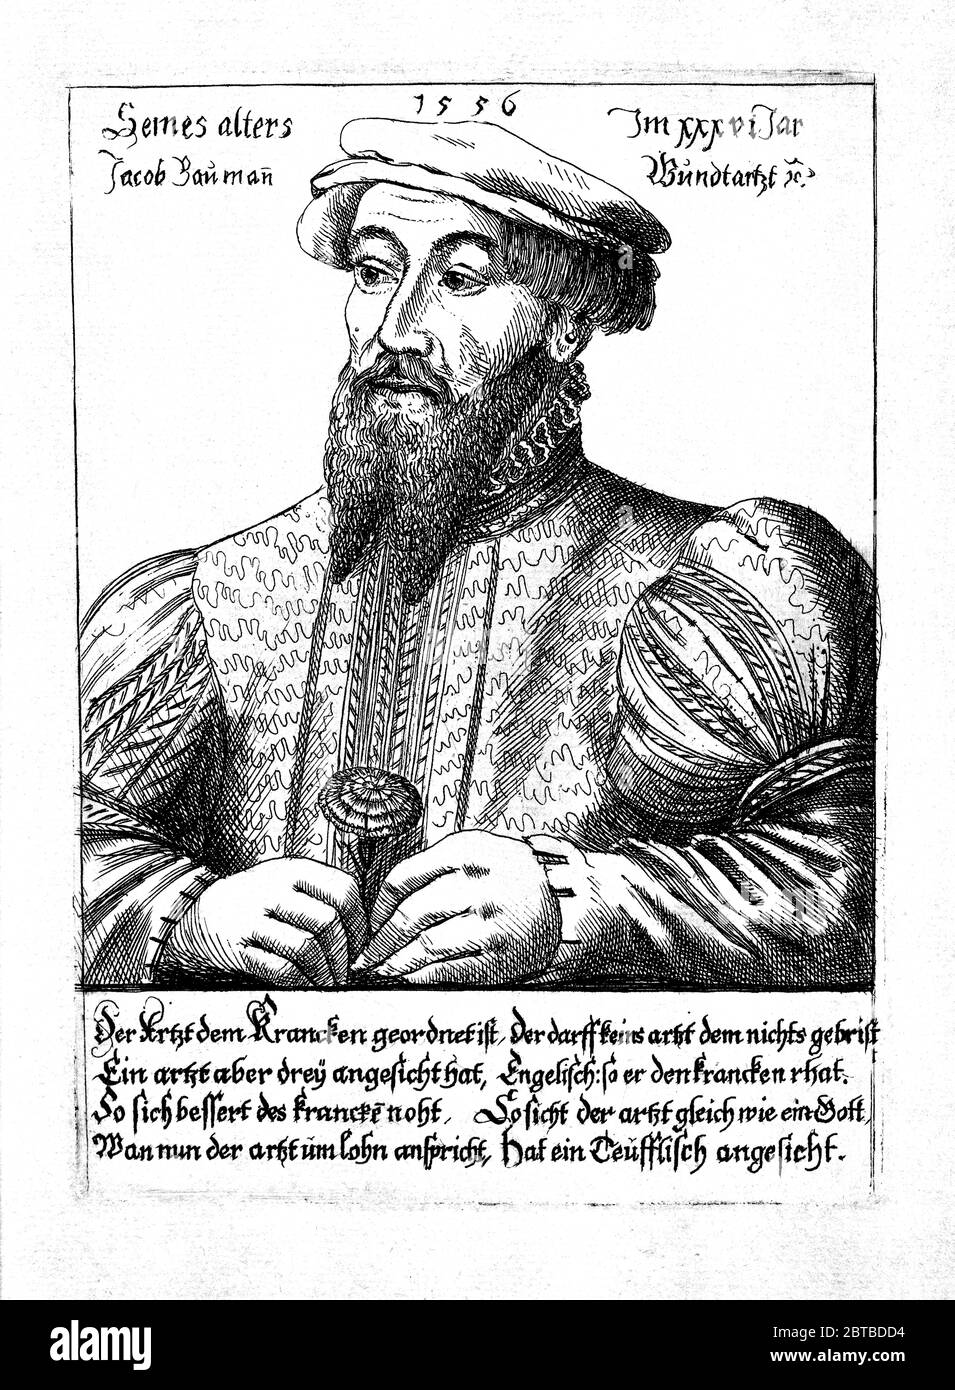 1556 ca , BELGIO : il medico tedesco JACOB Jakob BAUMANN ( 1521 - 1586 ) di Norimberga , l'editore dell'anatomista Flamish ANDREAS VESALIUS ( 1514 - 1564 ), alias ANDREA VESALIO Andreas van Wesel . Autor di De Humani Corporis Fabrica Libri Septem (sul tessuto del corpo umano). Ritratto di Hans Lautensack , 1556 . - ANATOMIA - ANATOMIA - ANATOMISTA - ANATOMISTA - scienziato - ritratto - DOTTORE - MEDICO - MEDICINA - medicina - SCIENZA - SCIENZA - DOTTORE - MEDICO - illustrazione - illustrazione - illustrazione - incisione - incisione - barba - barba - BELGIO - garofano - garofano - flusso Foto Stock